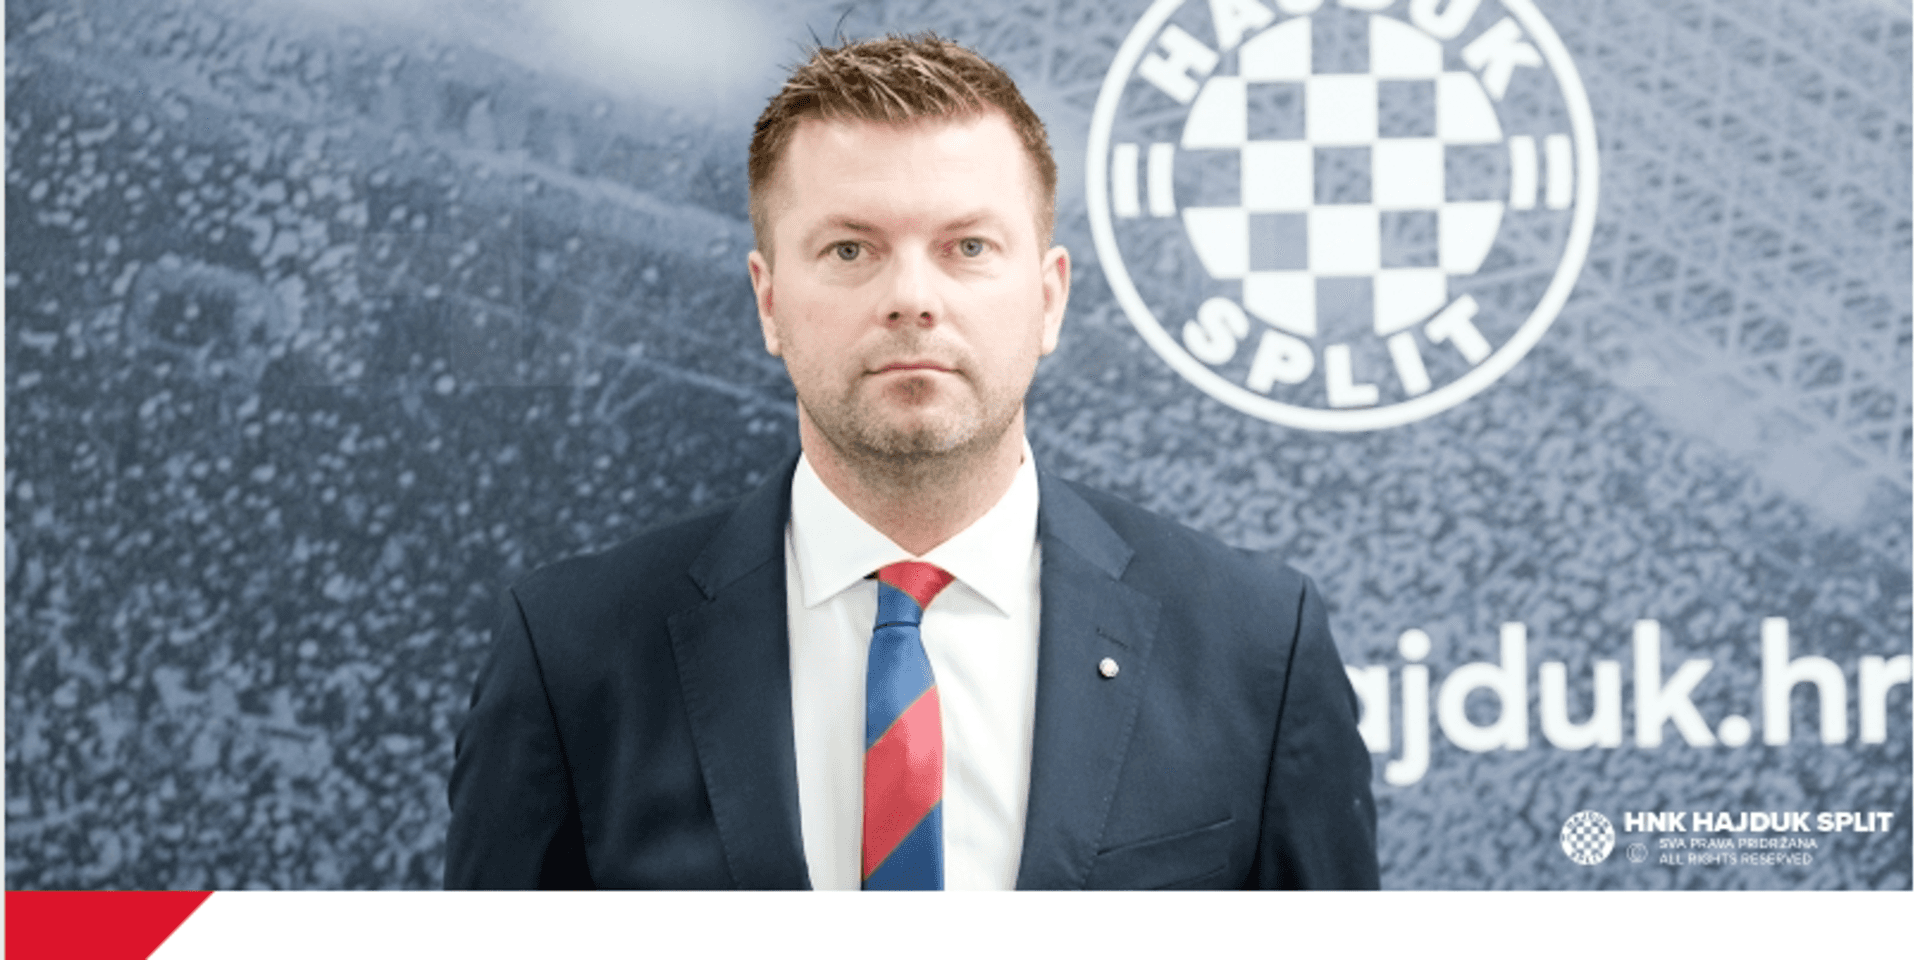 Jens Gustafsson presenteras som ny huvudtränare på Hajduk Splits hemsida.